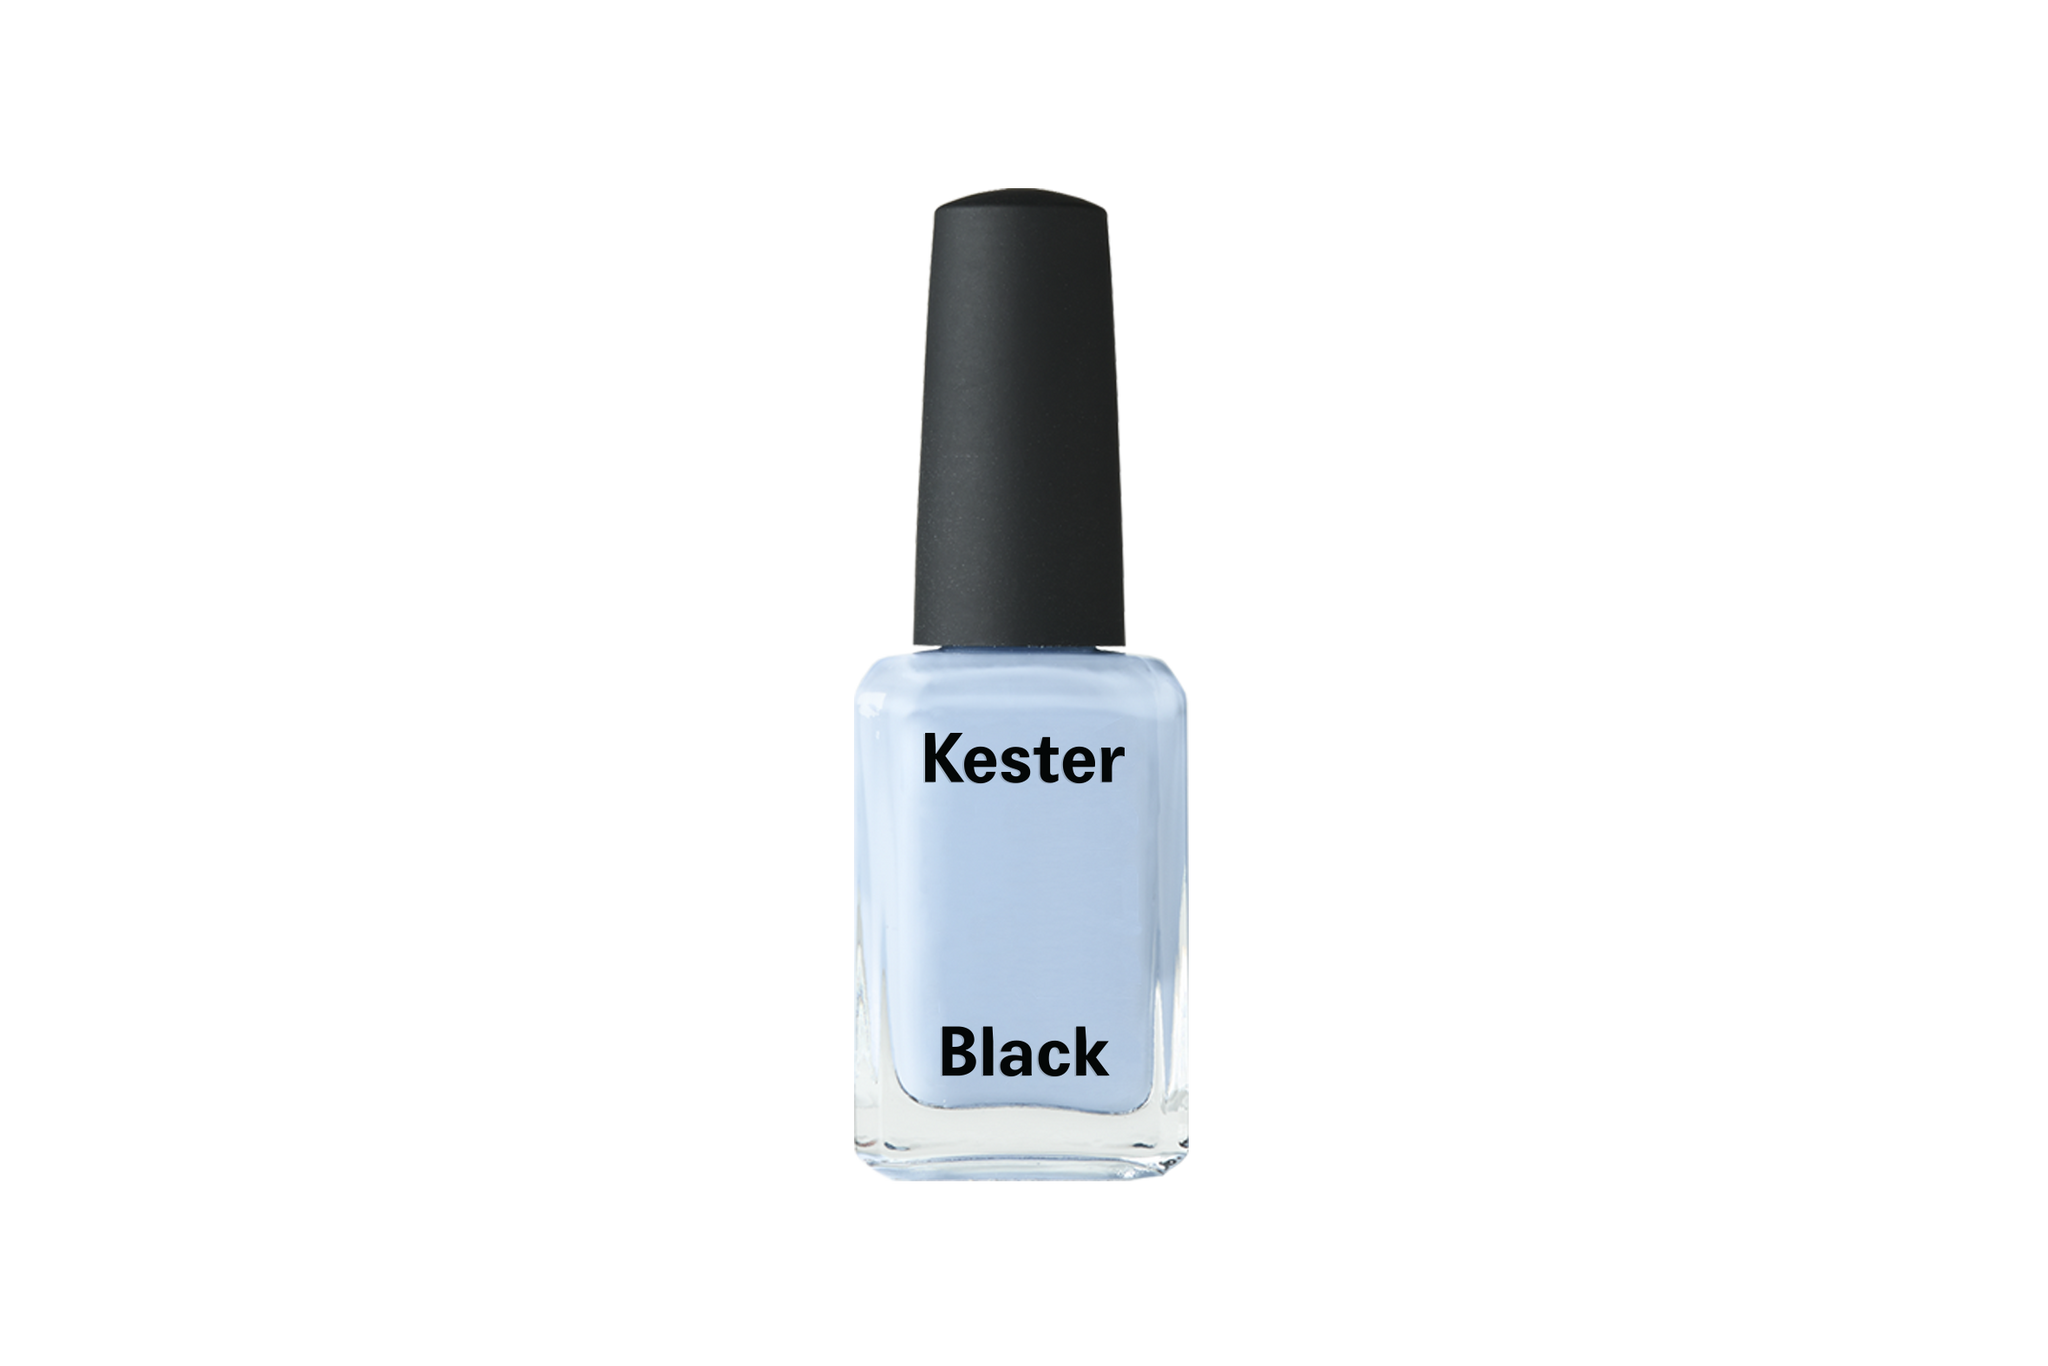 Kester Black Forget Me Not Nail Polish / Nagellack